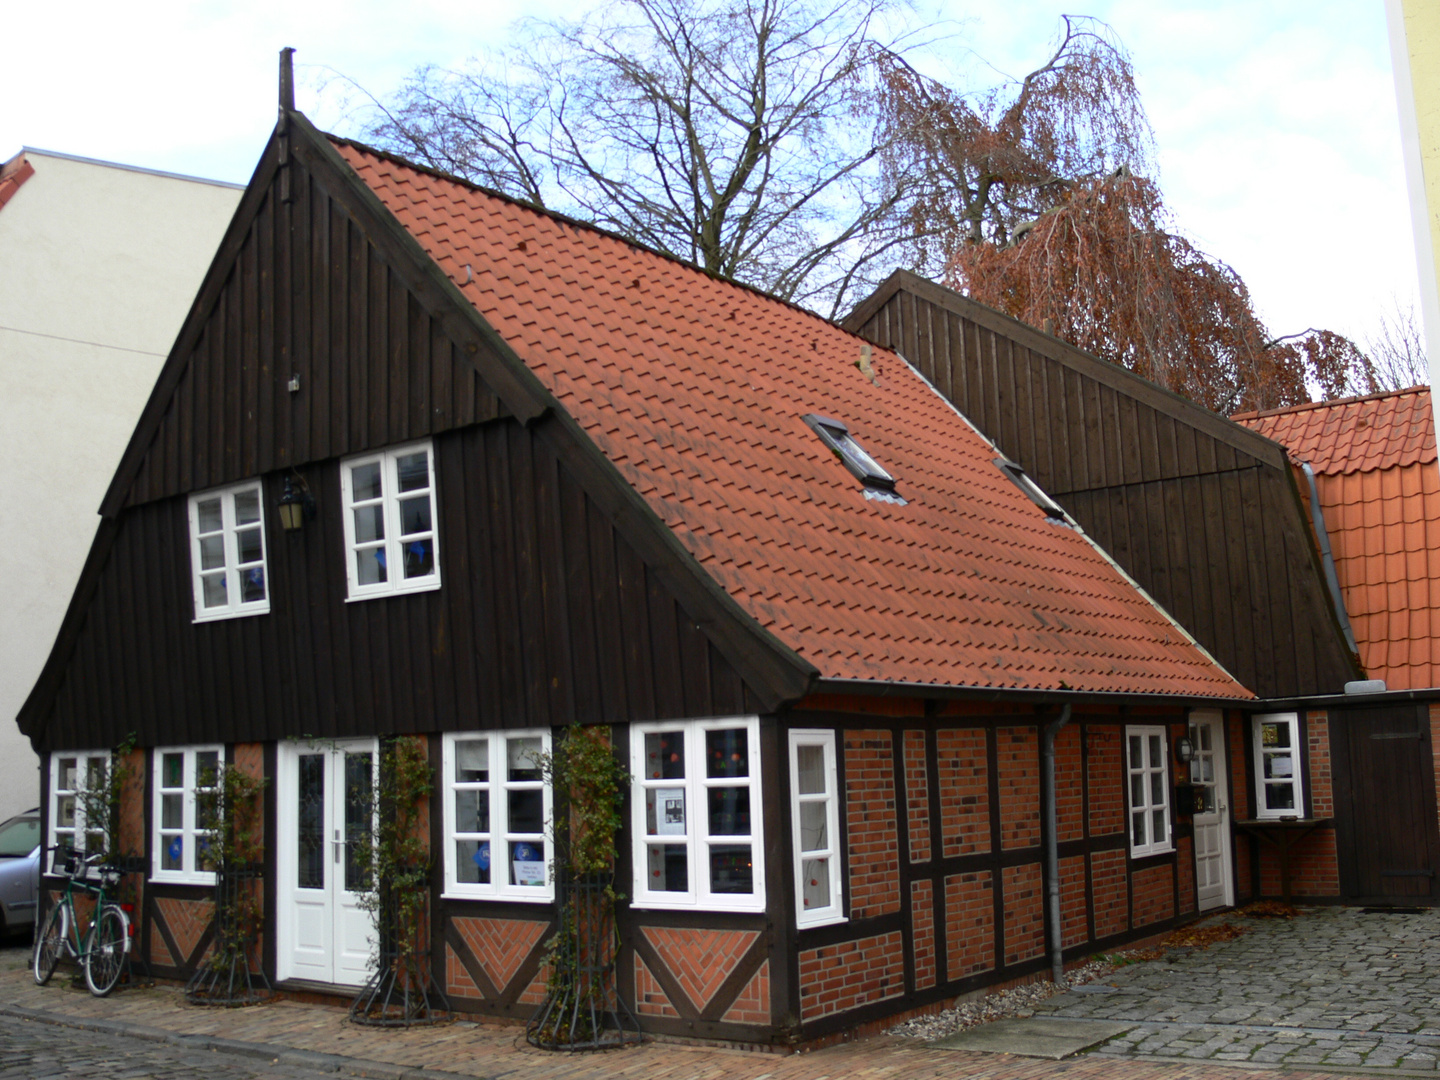 das älteste Haus in Neumünster ( Nummer 2 )